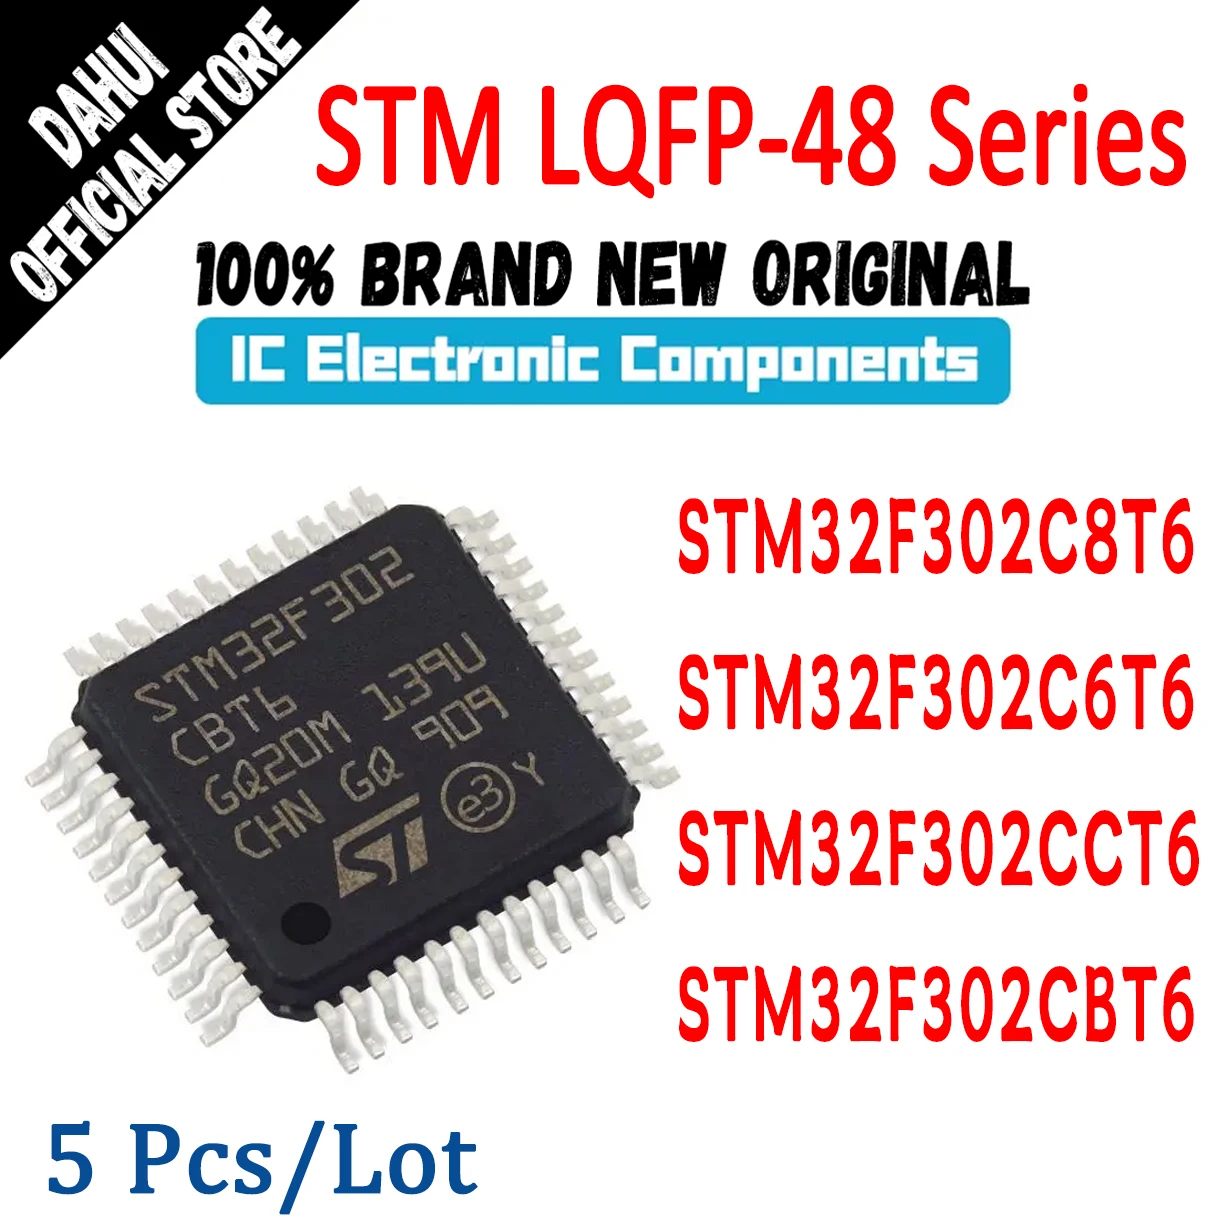 5db STM32F302C8T6 STM32F302C6T6 STM32F302CCT6 STM32F302CBT6 STM32F302C8 STM32F302C6 STM32F302CC STM32F302CB IC MCU Chip LQFP-48